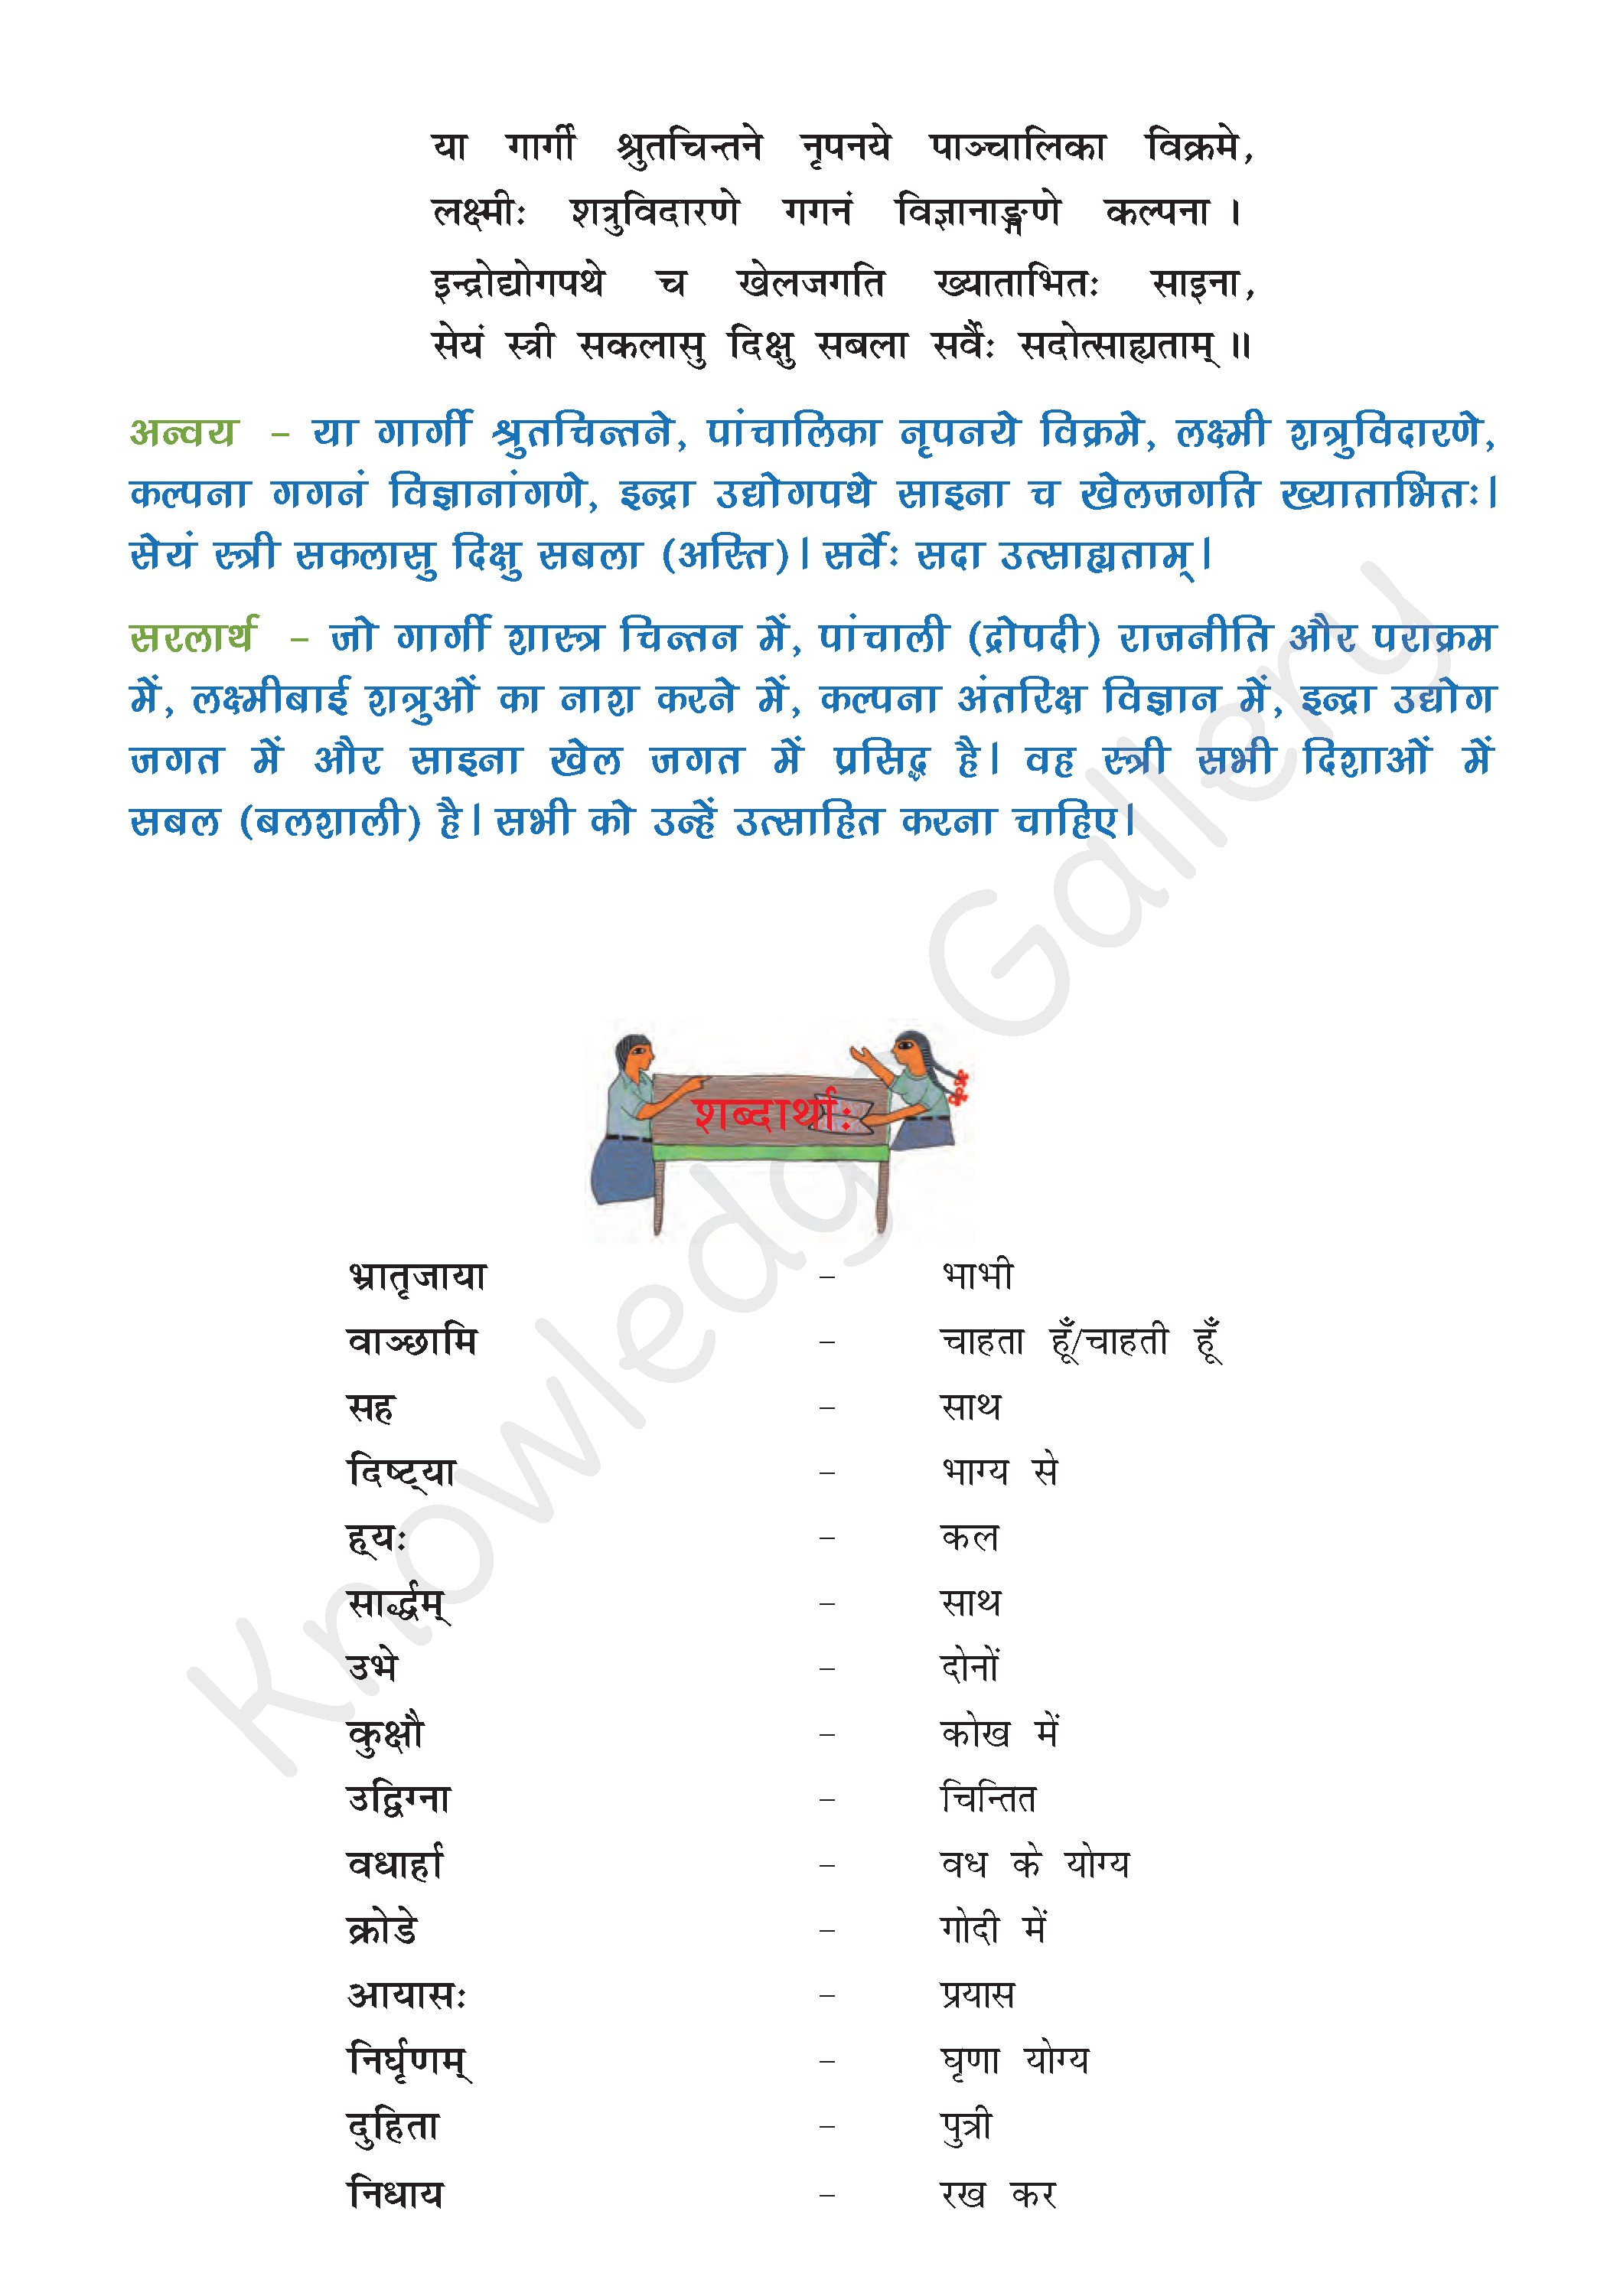 NCERT Solution For Class 8 Sanskrit Chapter 6 part 5